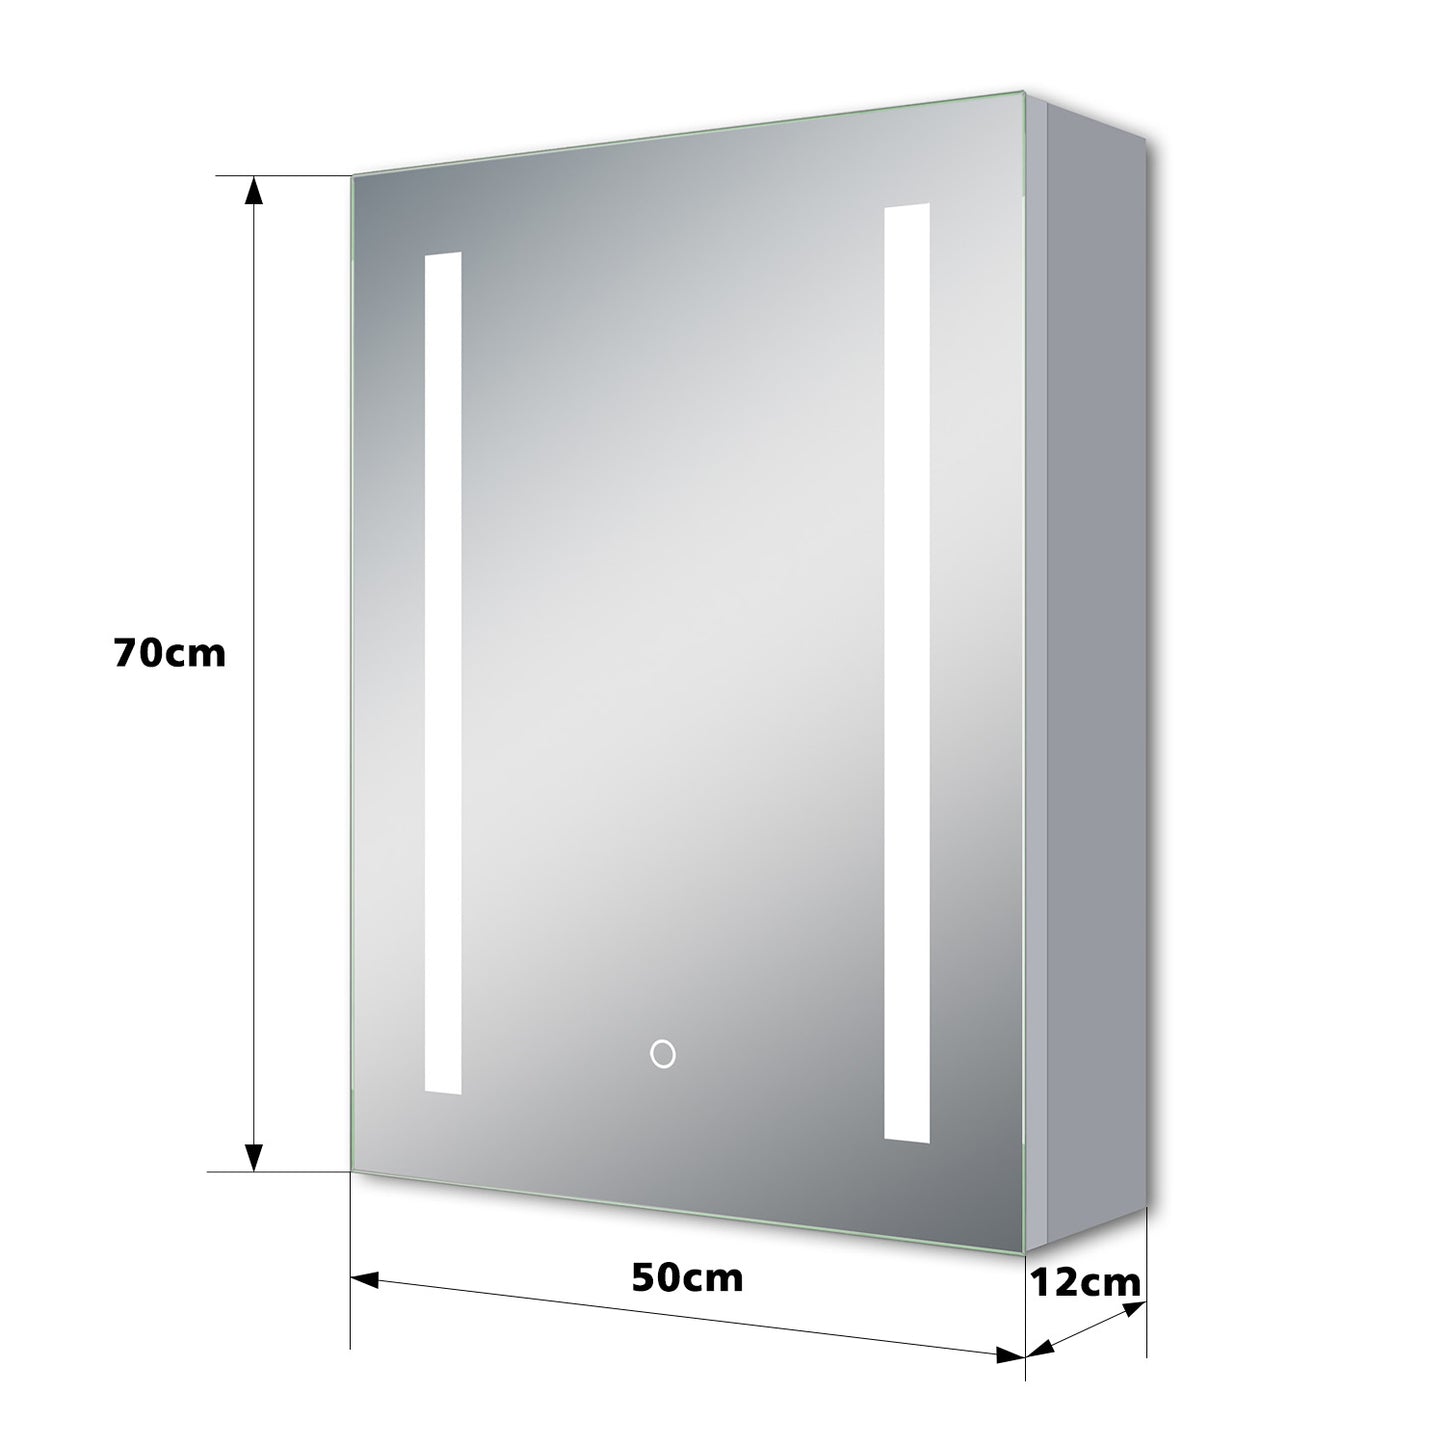 Badezimmerspiegelschrank 70x50 cm LED Spiegelschrank Touch Schalter, Beschlagfrei, Kaltweiß Rasiersteckdose, Aluminium